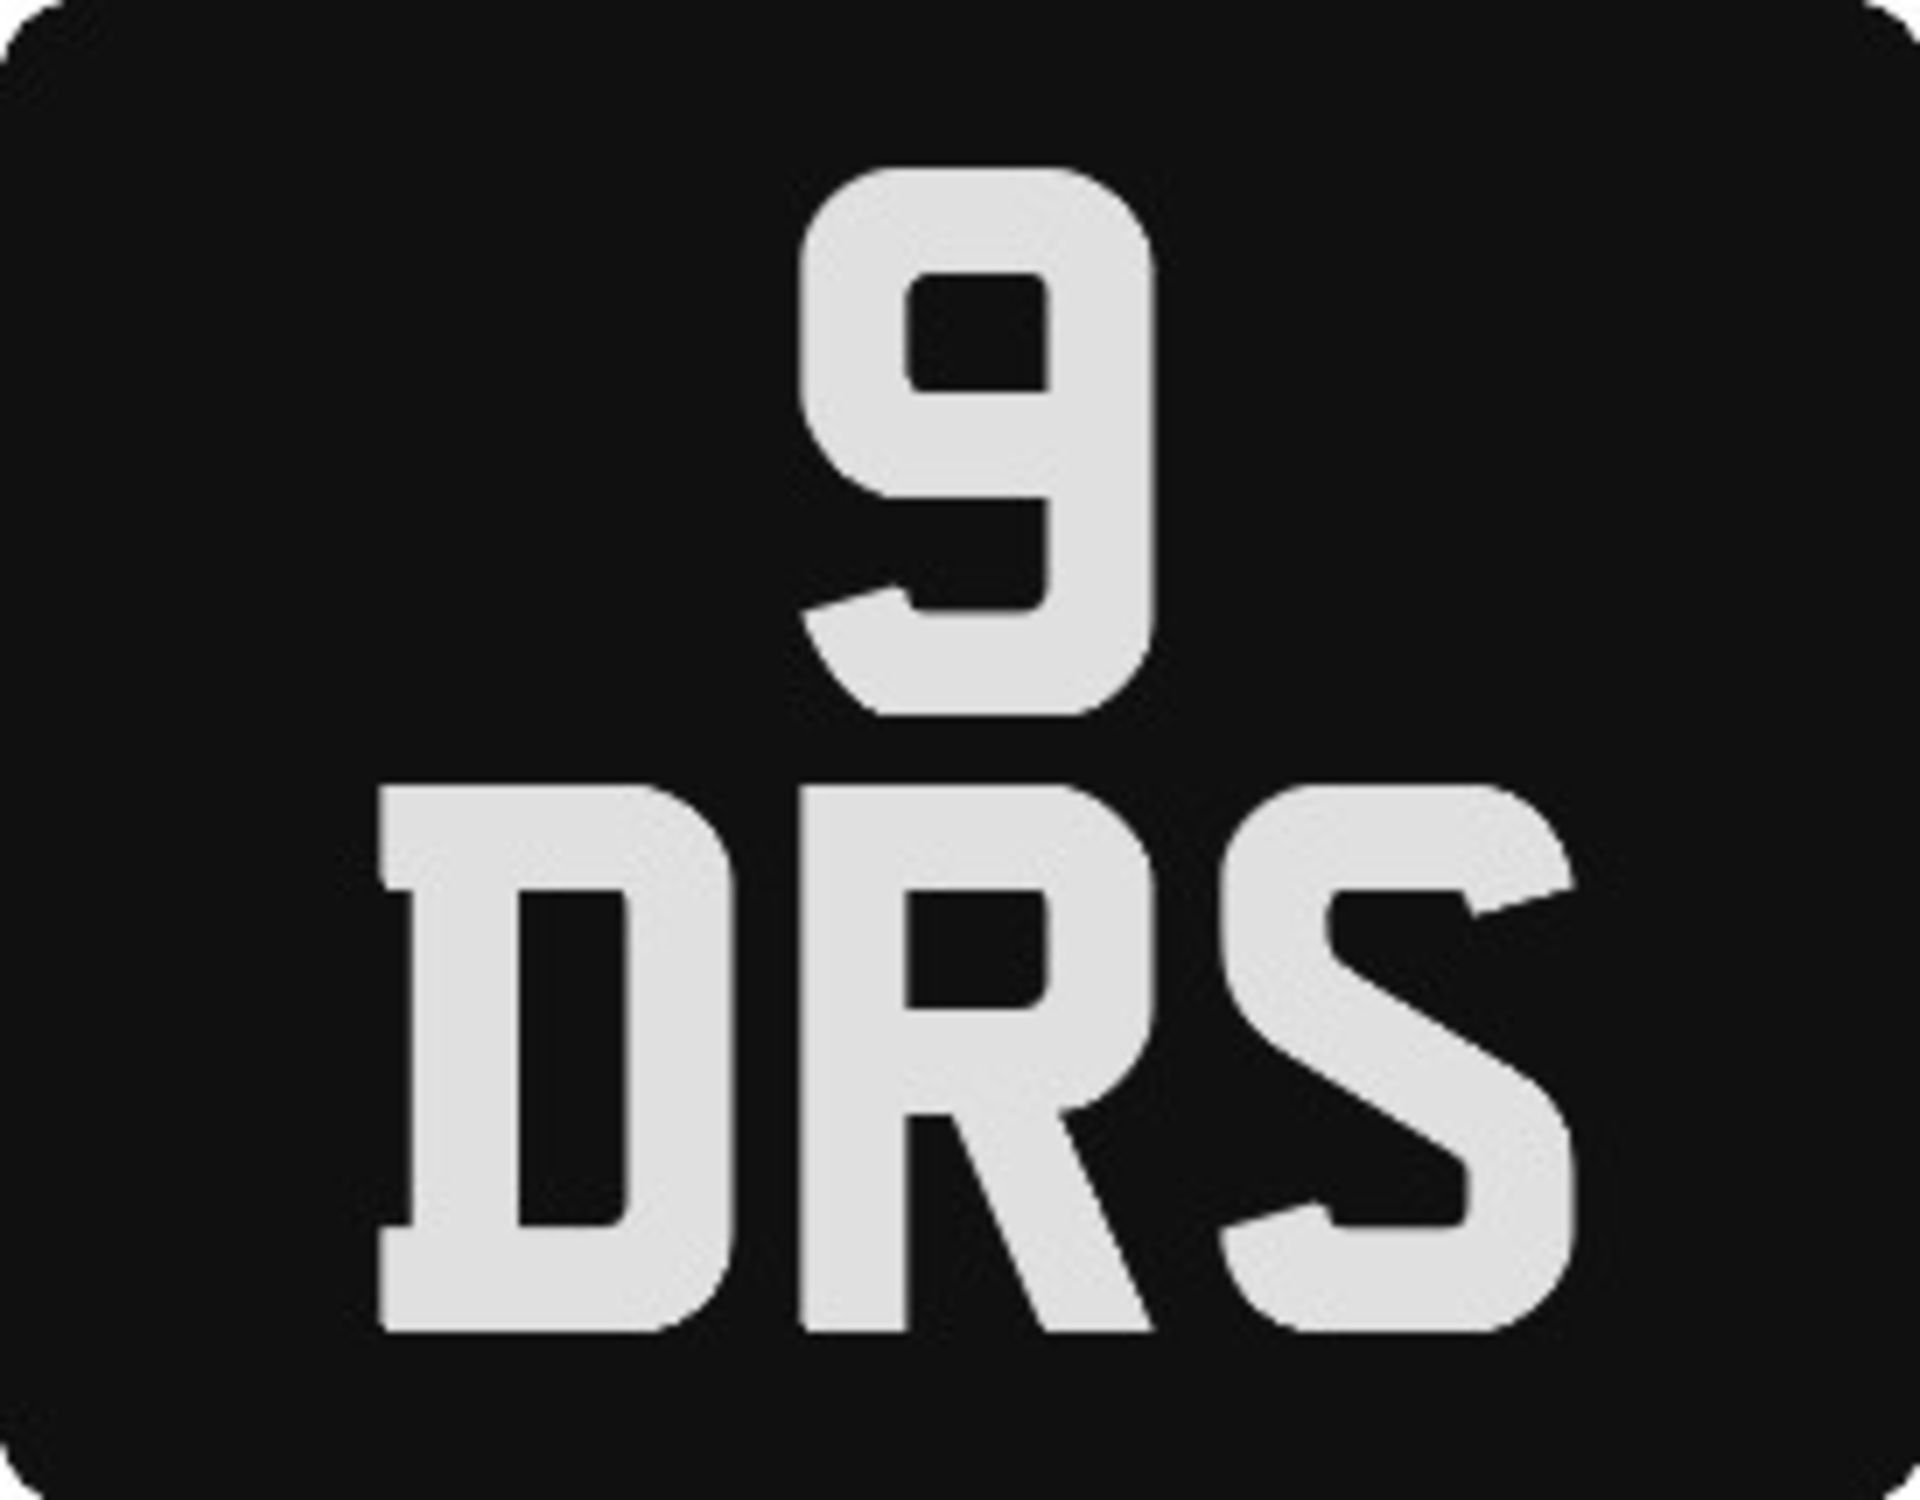 9 DRS Registration Number